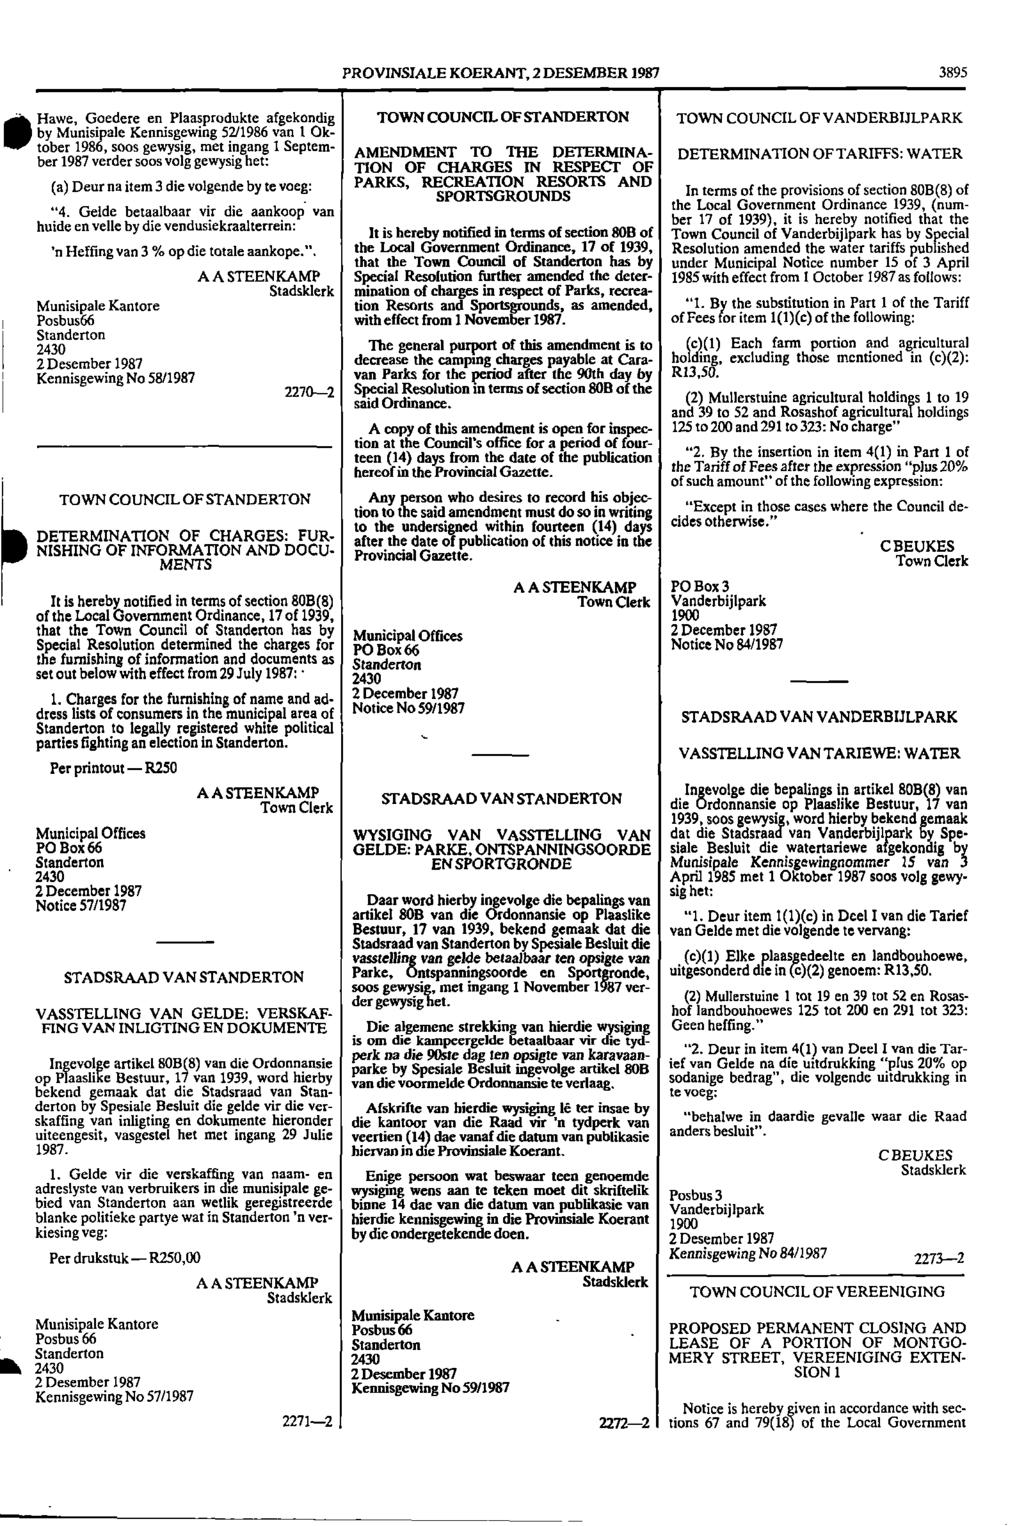 1 Posbus66 1 Kennisgewing PROVINSIALE KOERANT, 2 DESEMBER 1987 3895 11 Hawe, Goedere en Plaasprodukte afgekondig TOWN COUNCIL OF STANDERTON TOWN COUNCIL OF VANDERBIJLPARK by Munisipale Kennisgewing